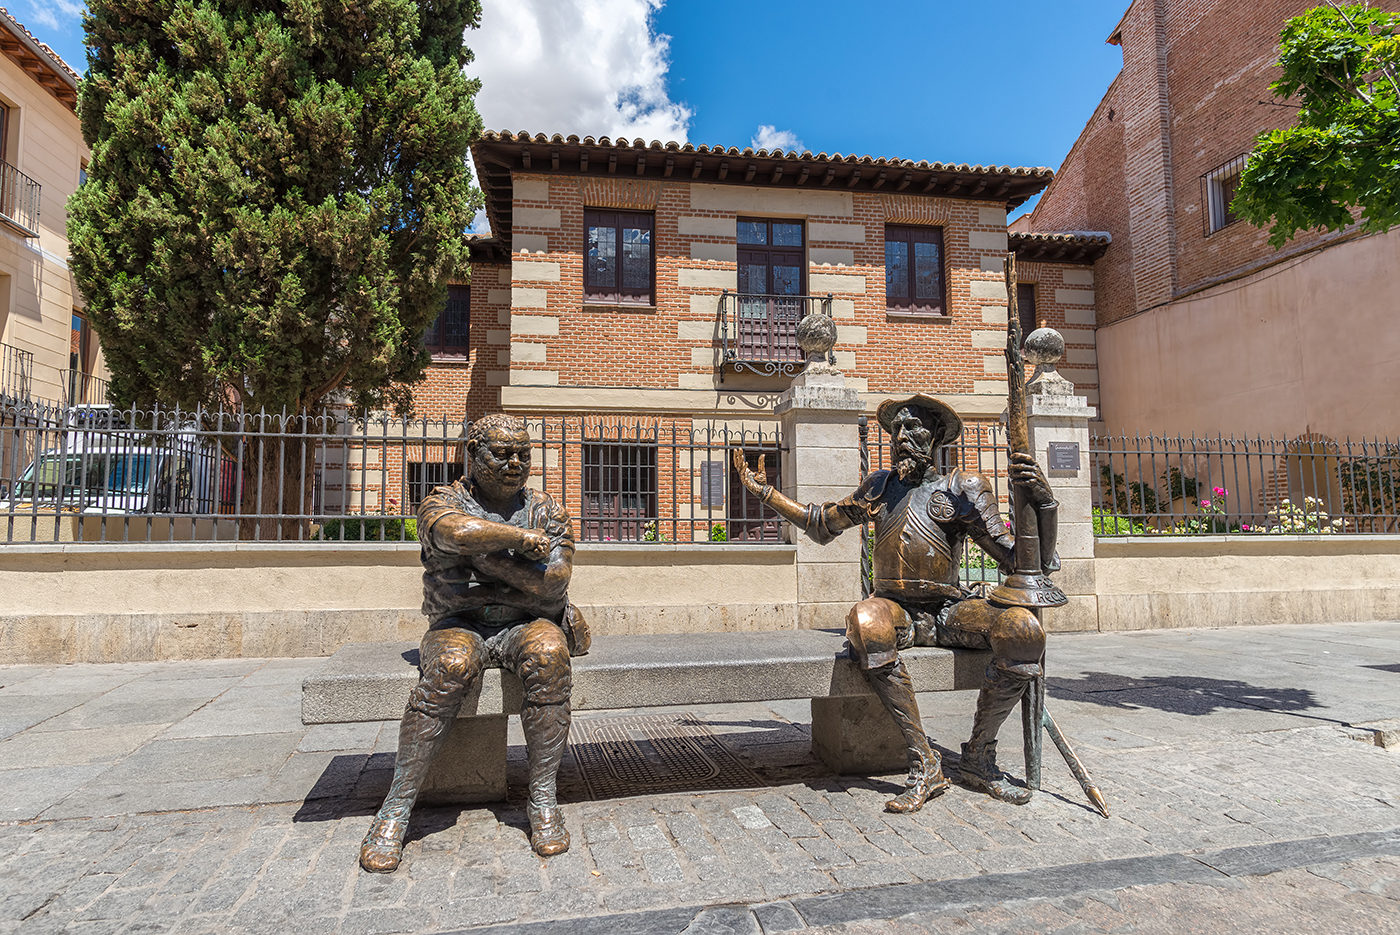 Una breve sosta nella storia e nella terra di Cervantes